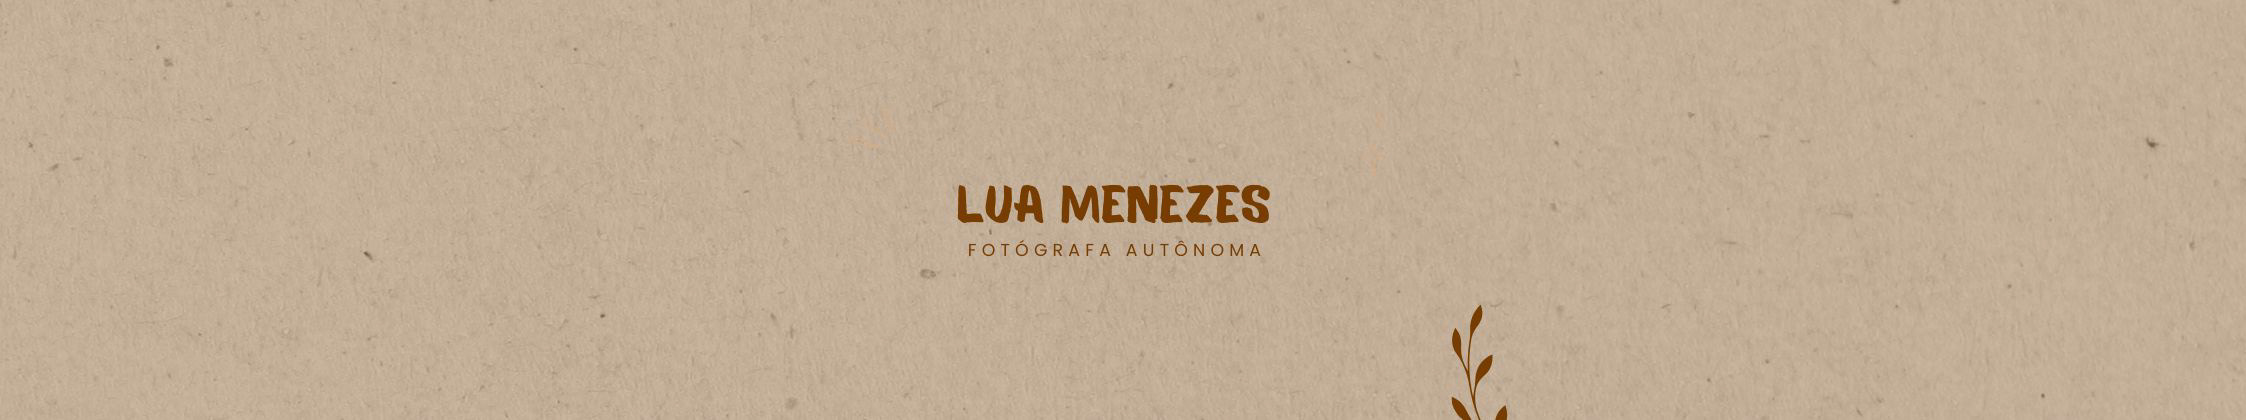 Bannière de profil de Lua Menezes